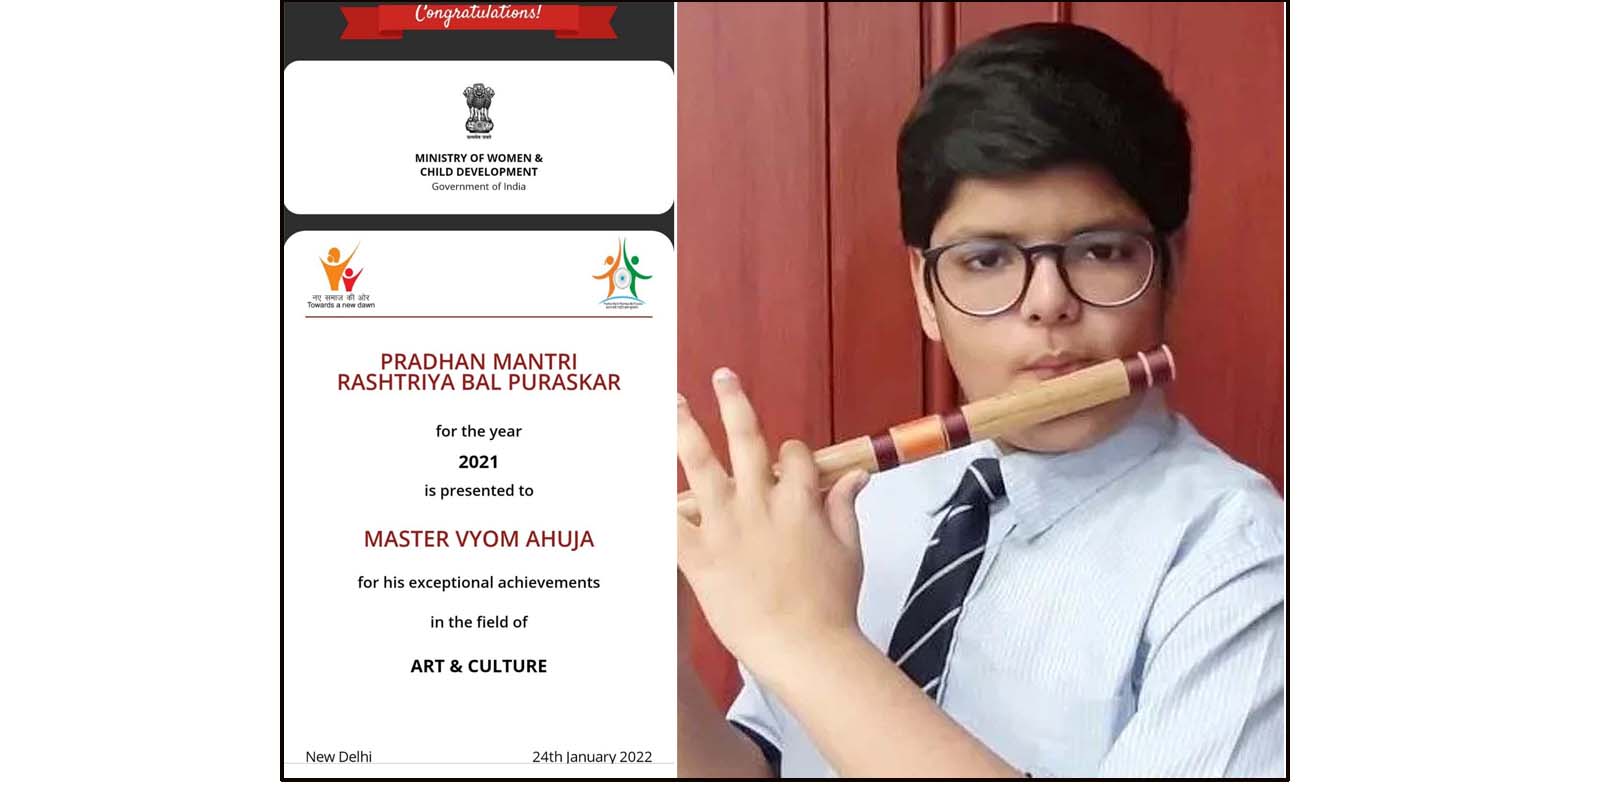 ‘प्रधानमंत्री राष्ट्रीय बाल पुरस्कार-2021’ सी.एम.एस. छात्र व्योम को